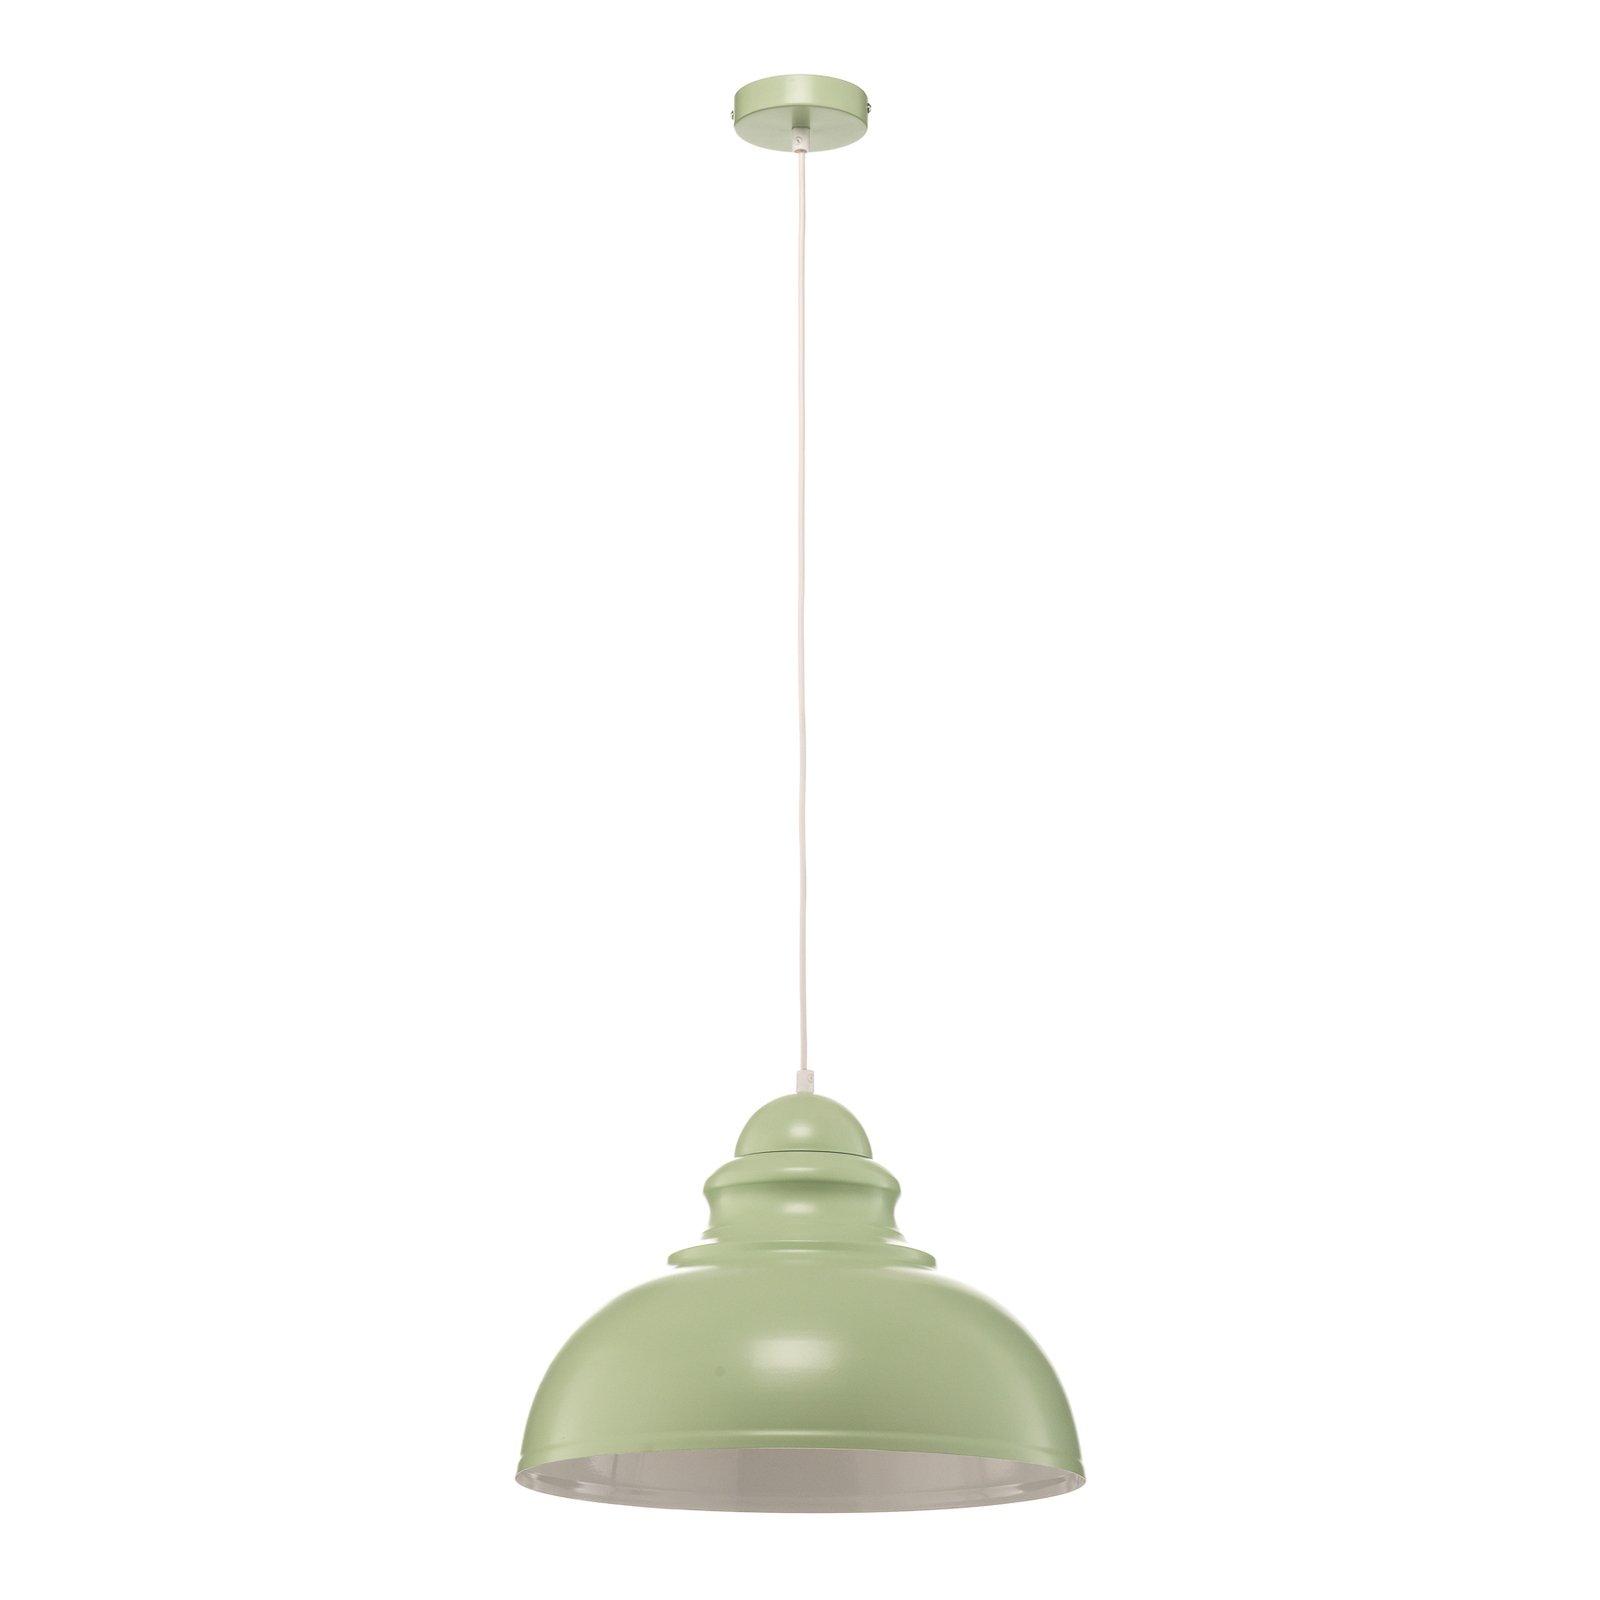 Hanglamp Corin van metaal, groen